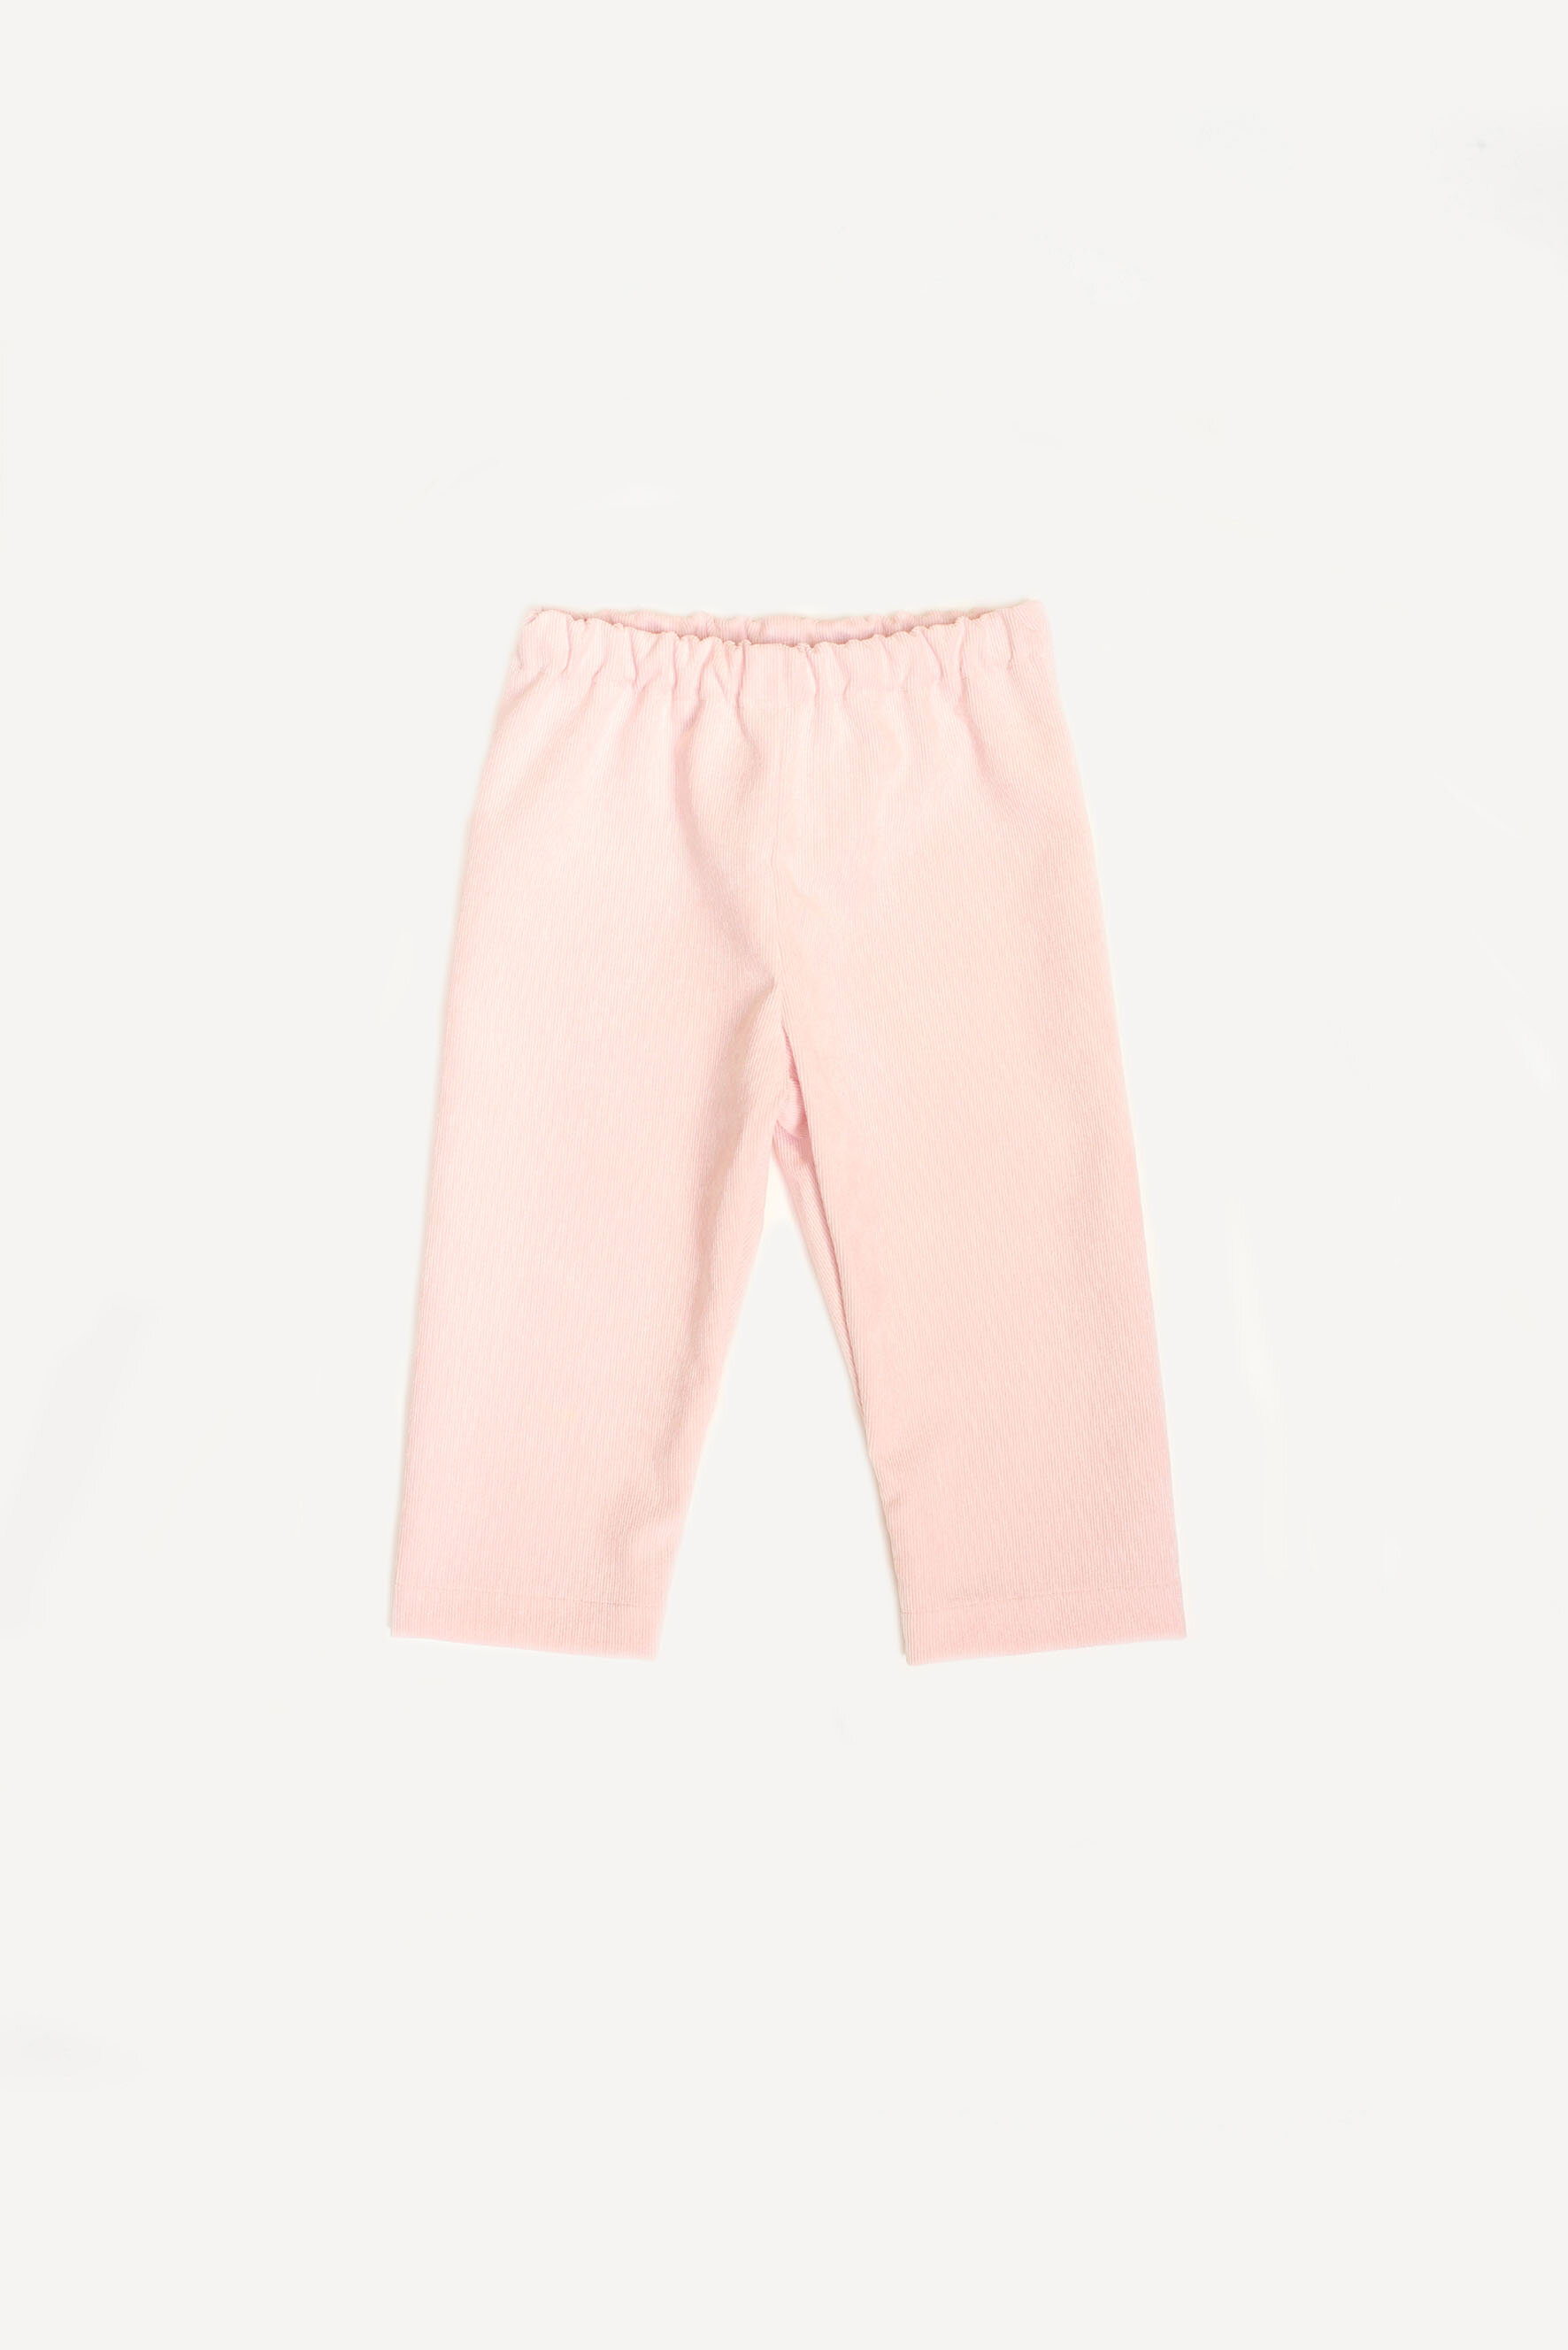 Pantaloni bambina in velluto rosa